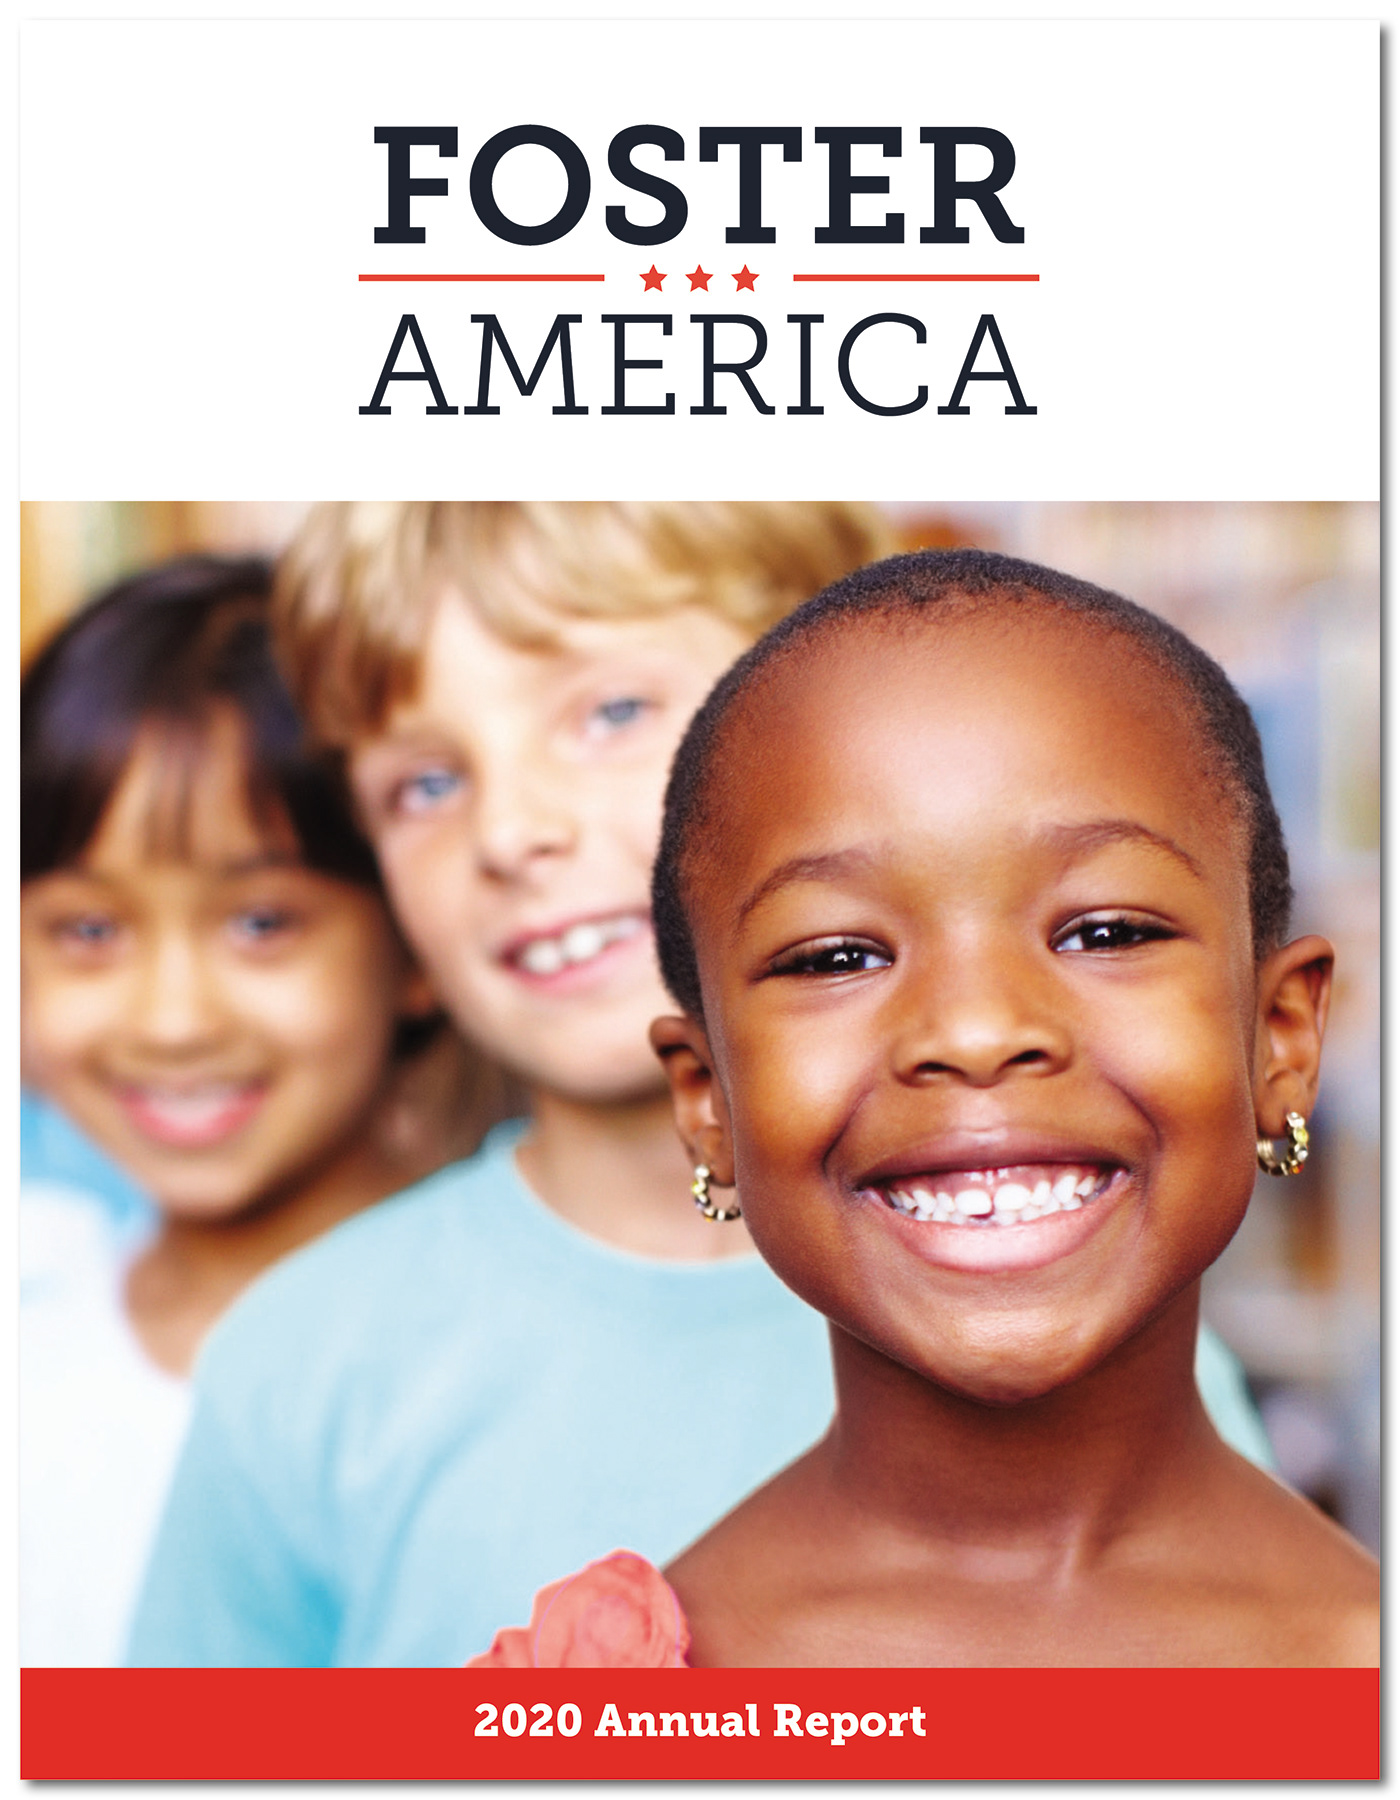 Annual report for Foster America Nonprofit Organization